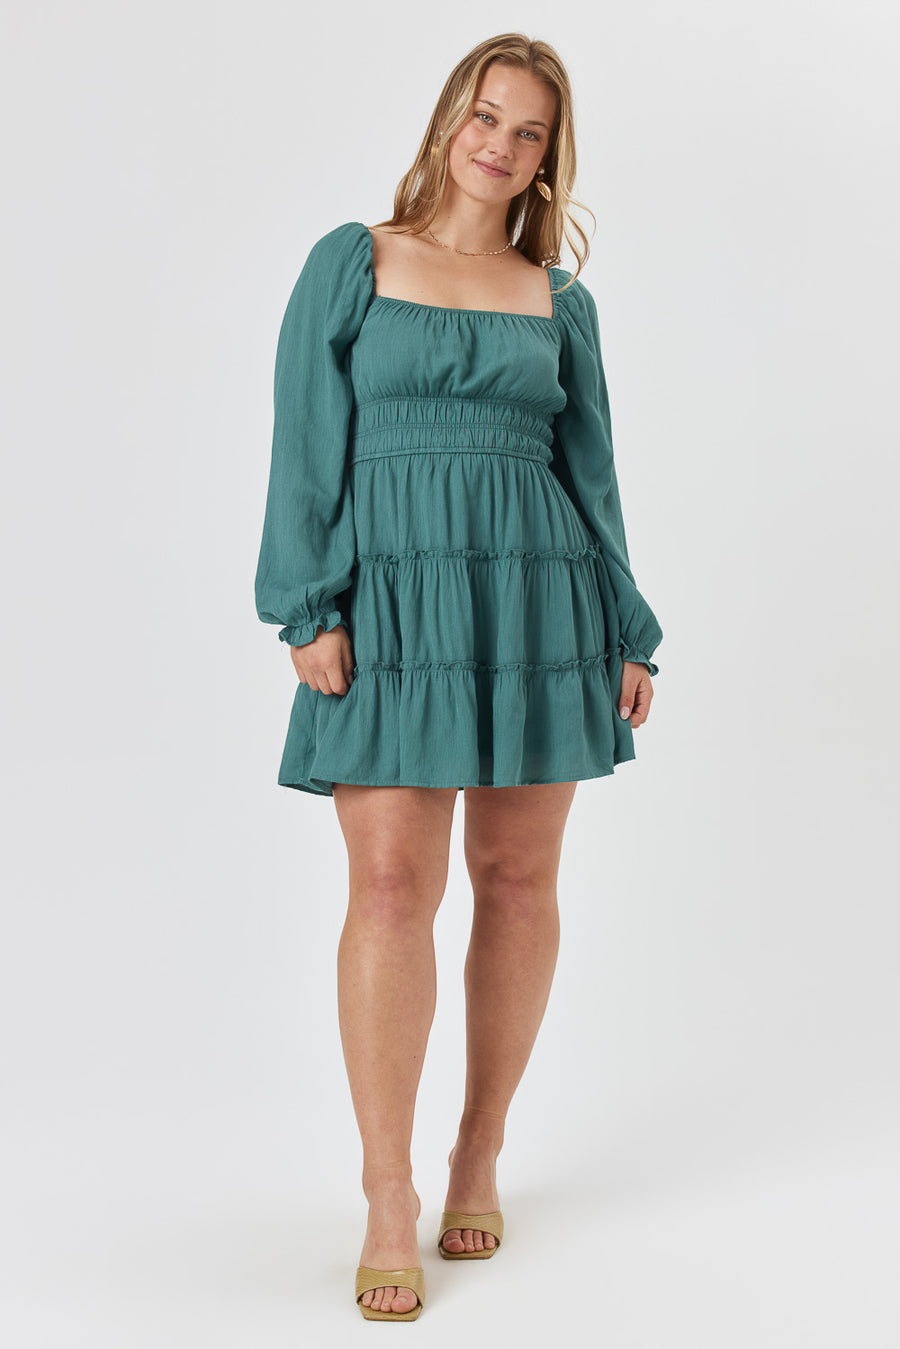 Green Long Sleeve Ruffle Dress - Trixxi Clothing